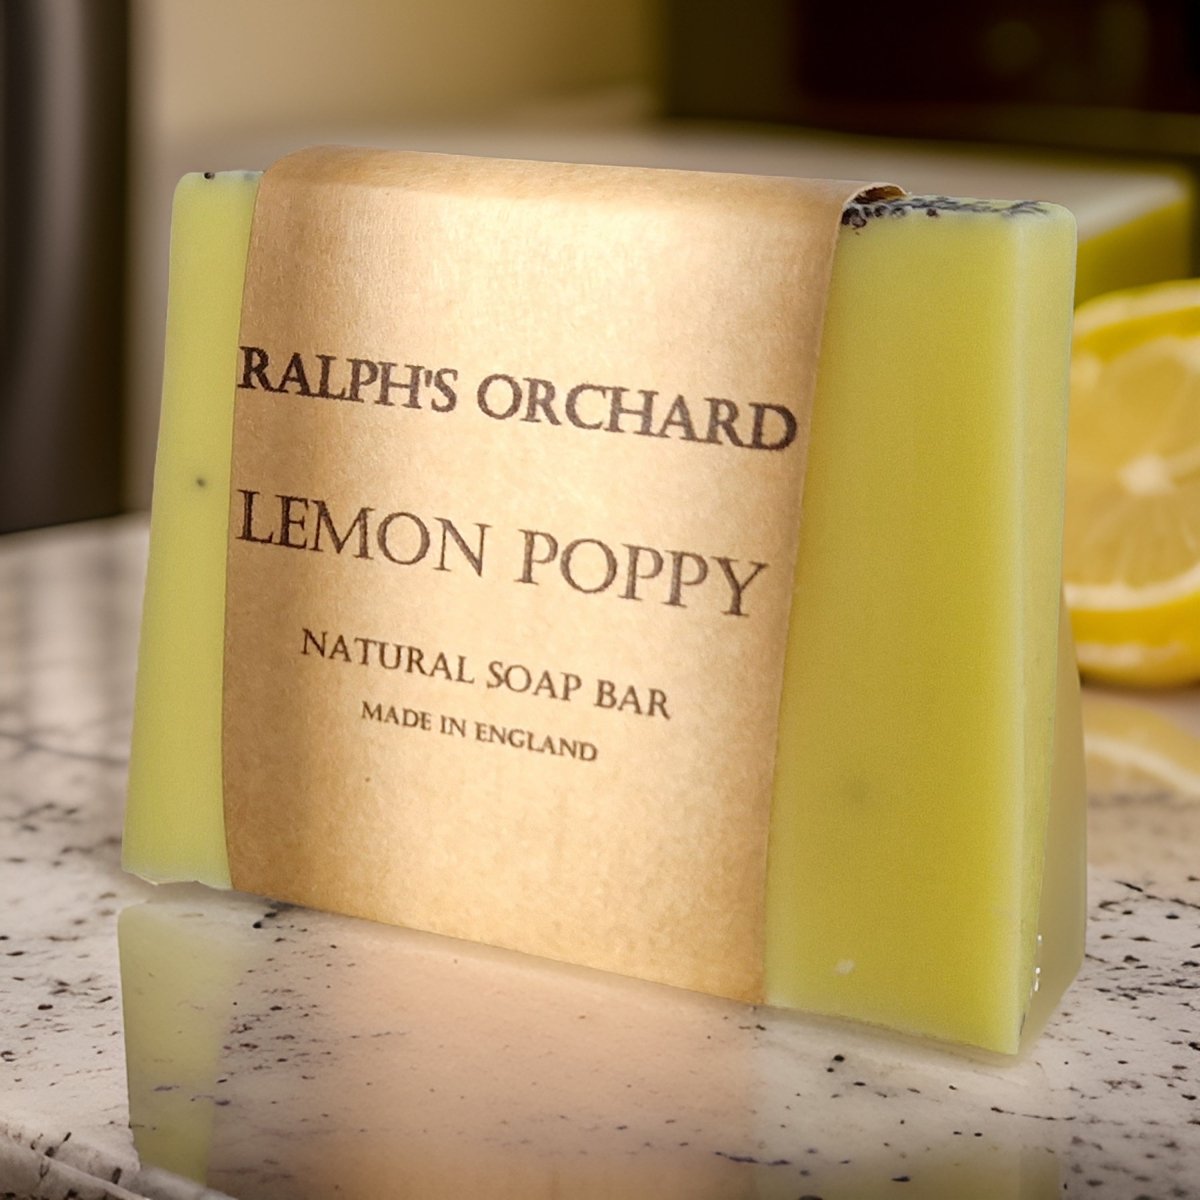 Lemon poppy handmade soap